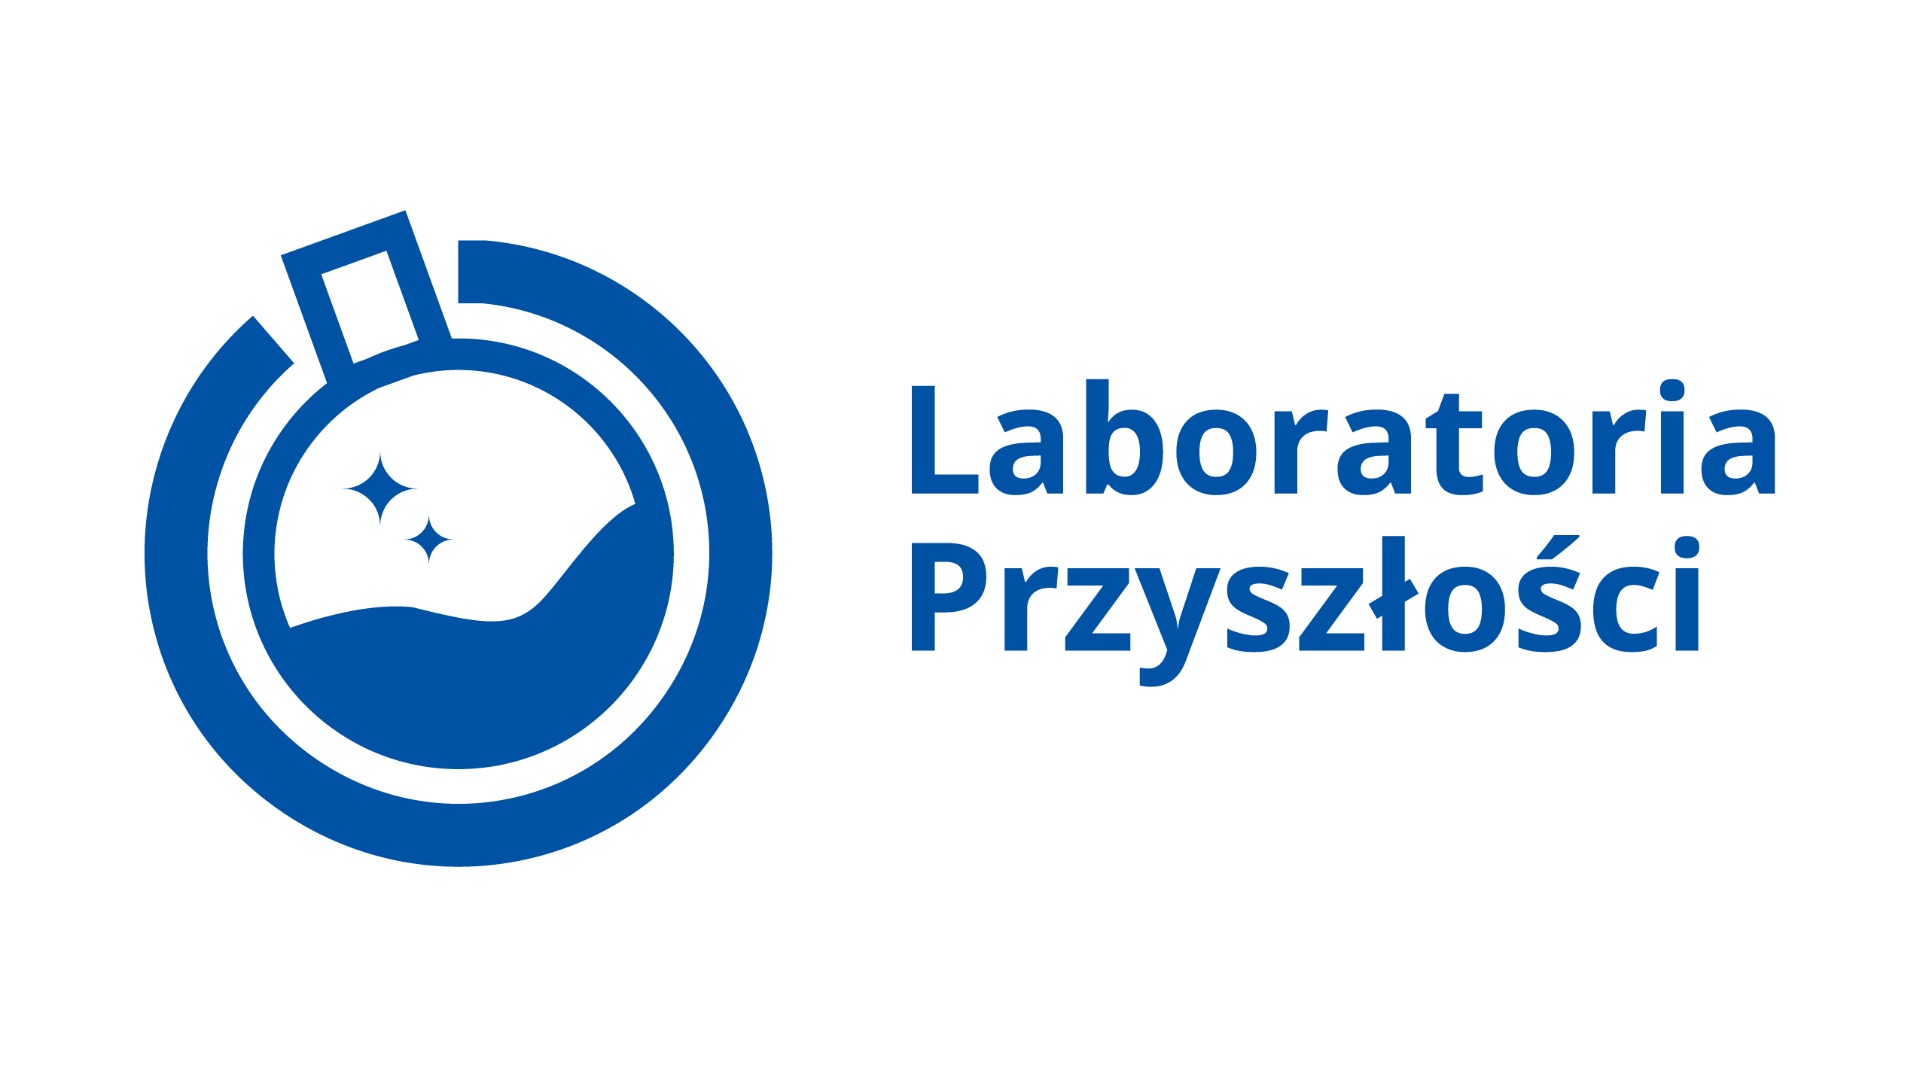 Logo projekty #Laboratoria Przyszłości. 